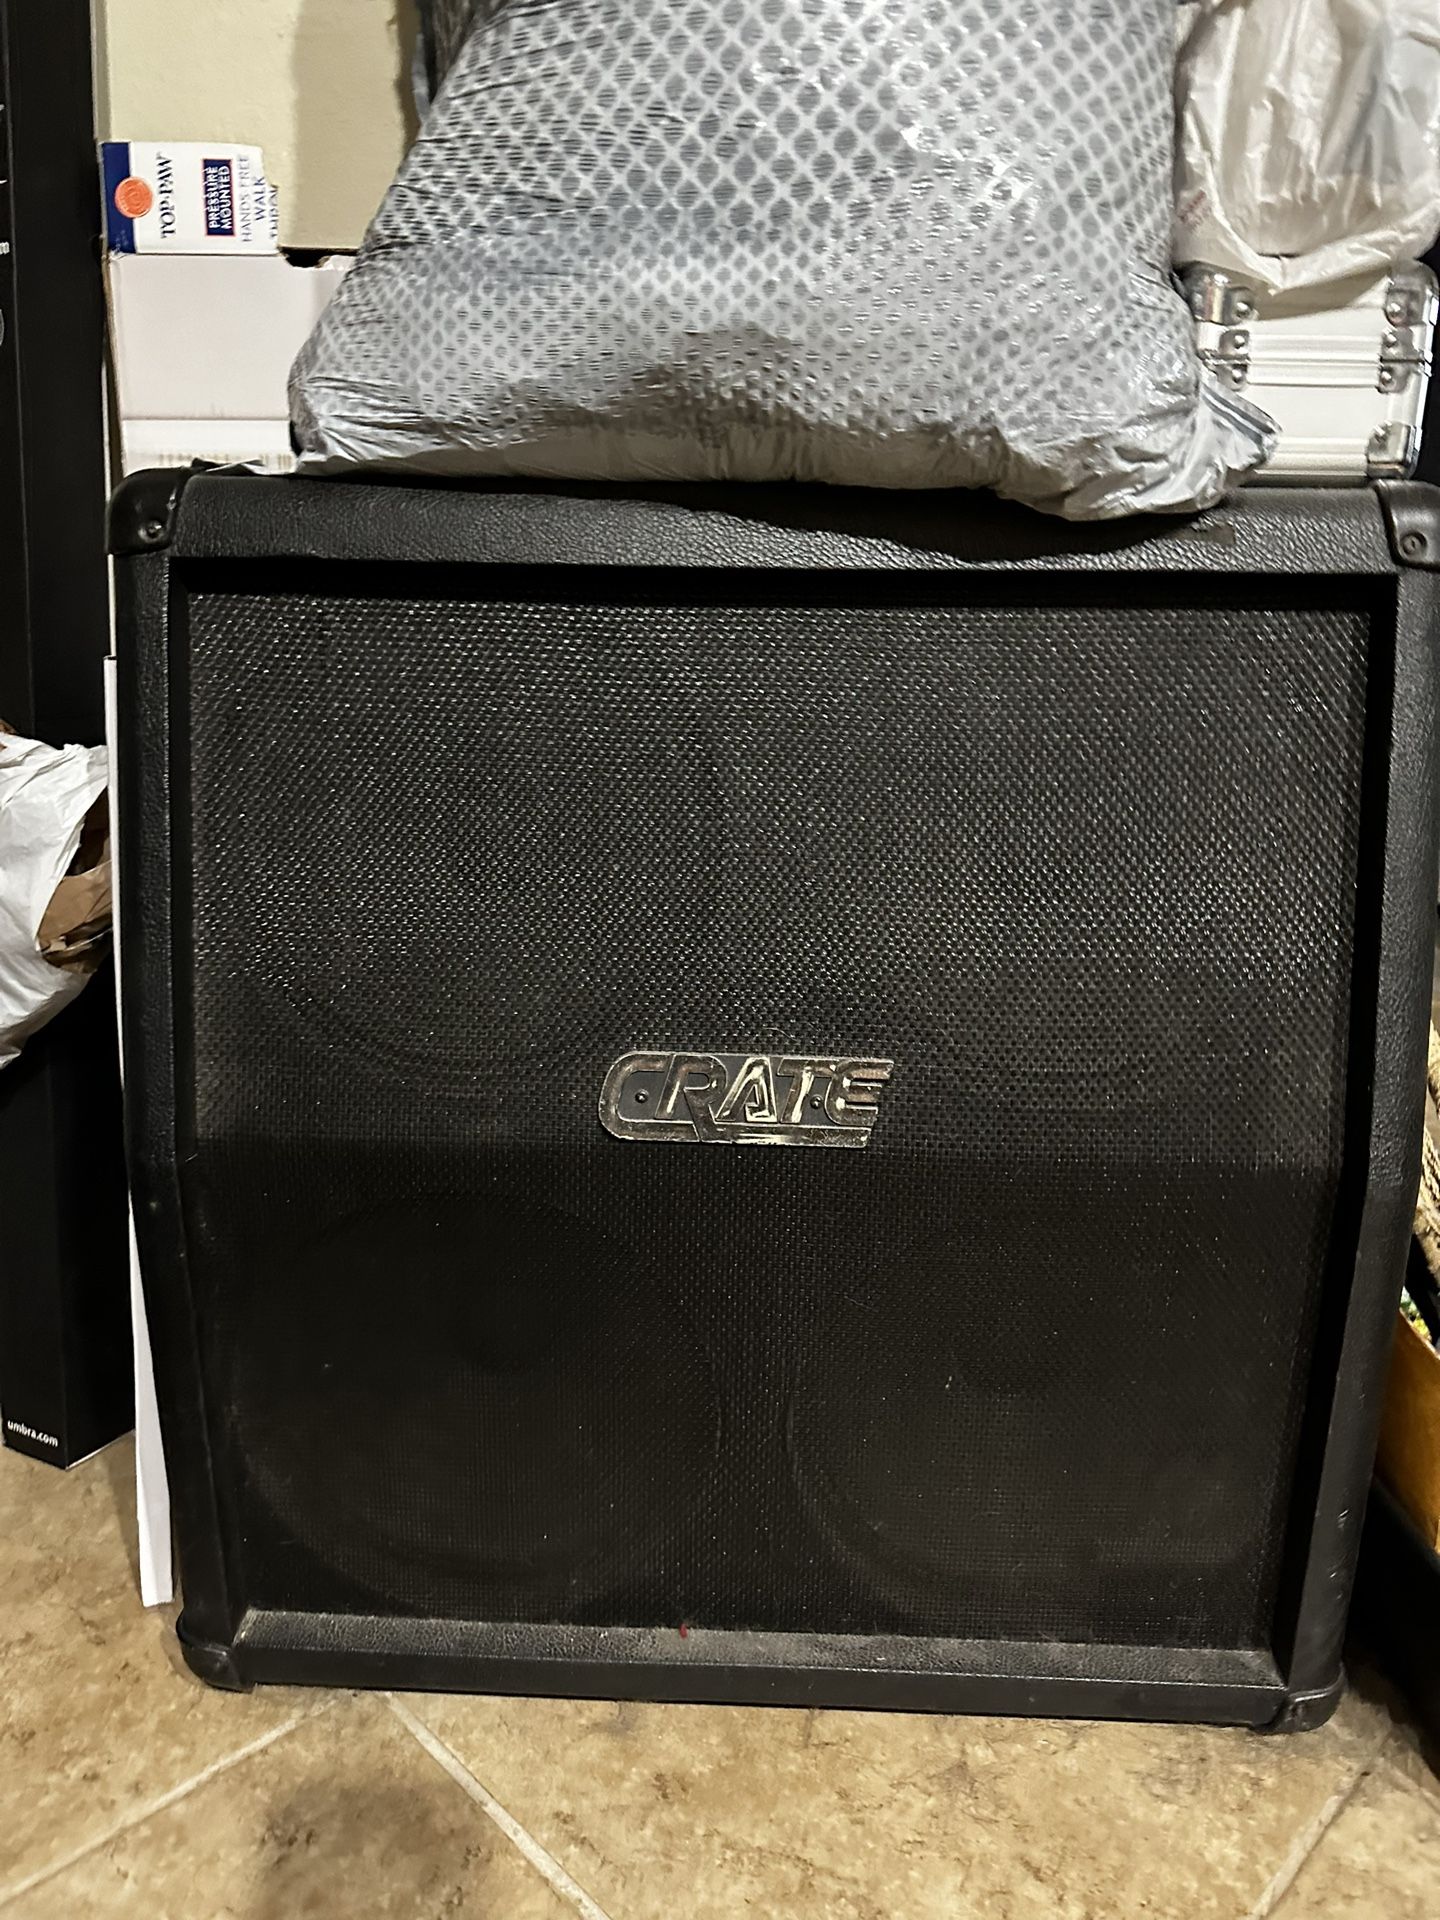 FT/FS- Crate GX-412XS Speaker Cab